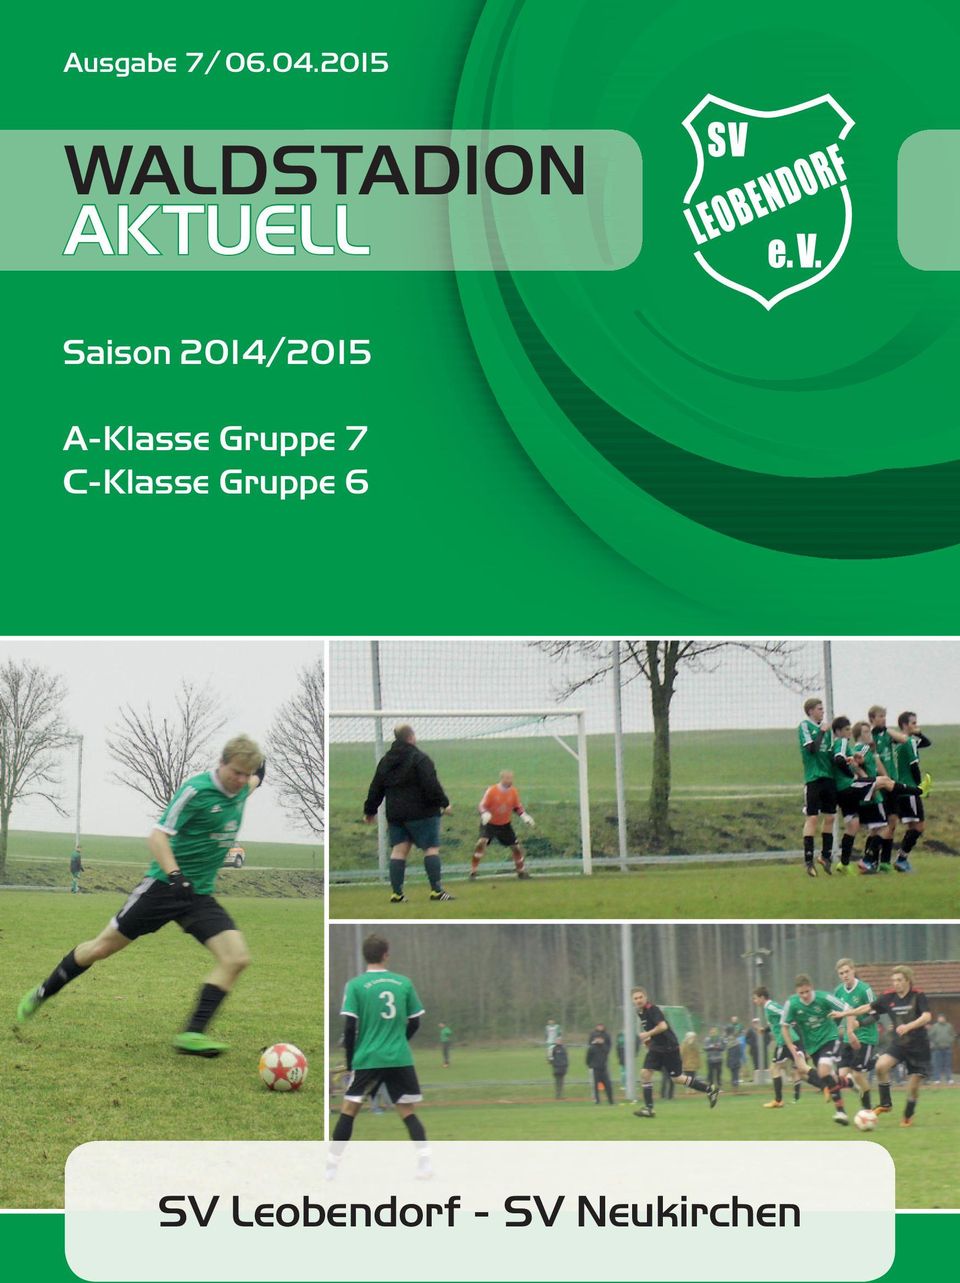 2014/2015 A-Klasse Gruppe 7